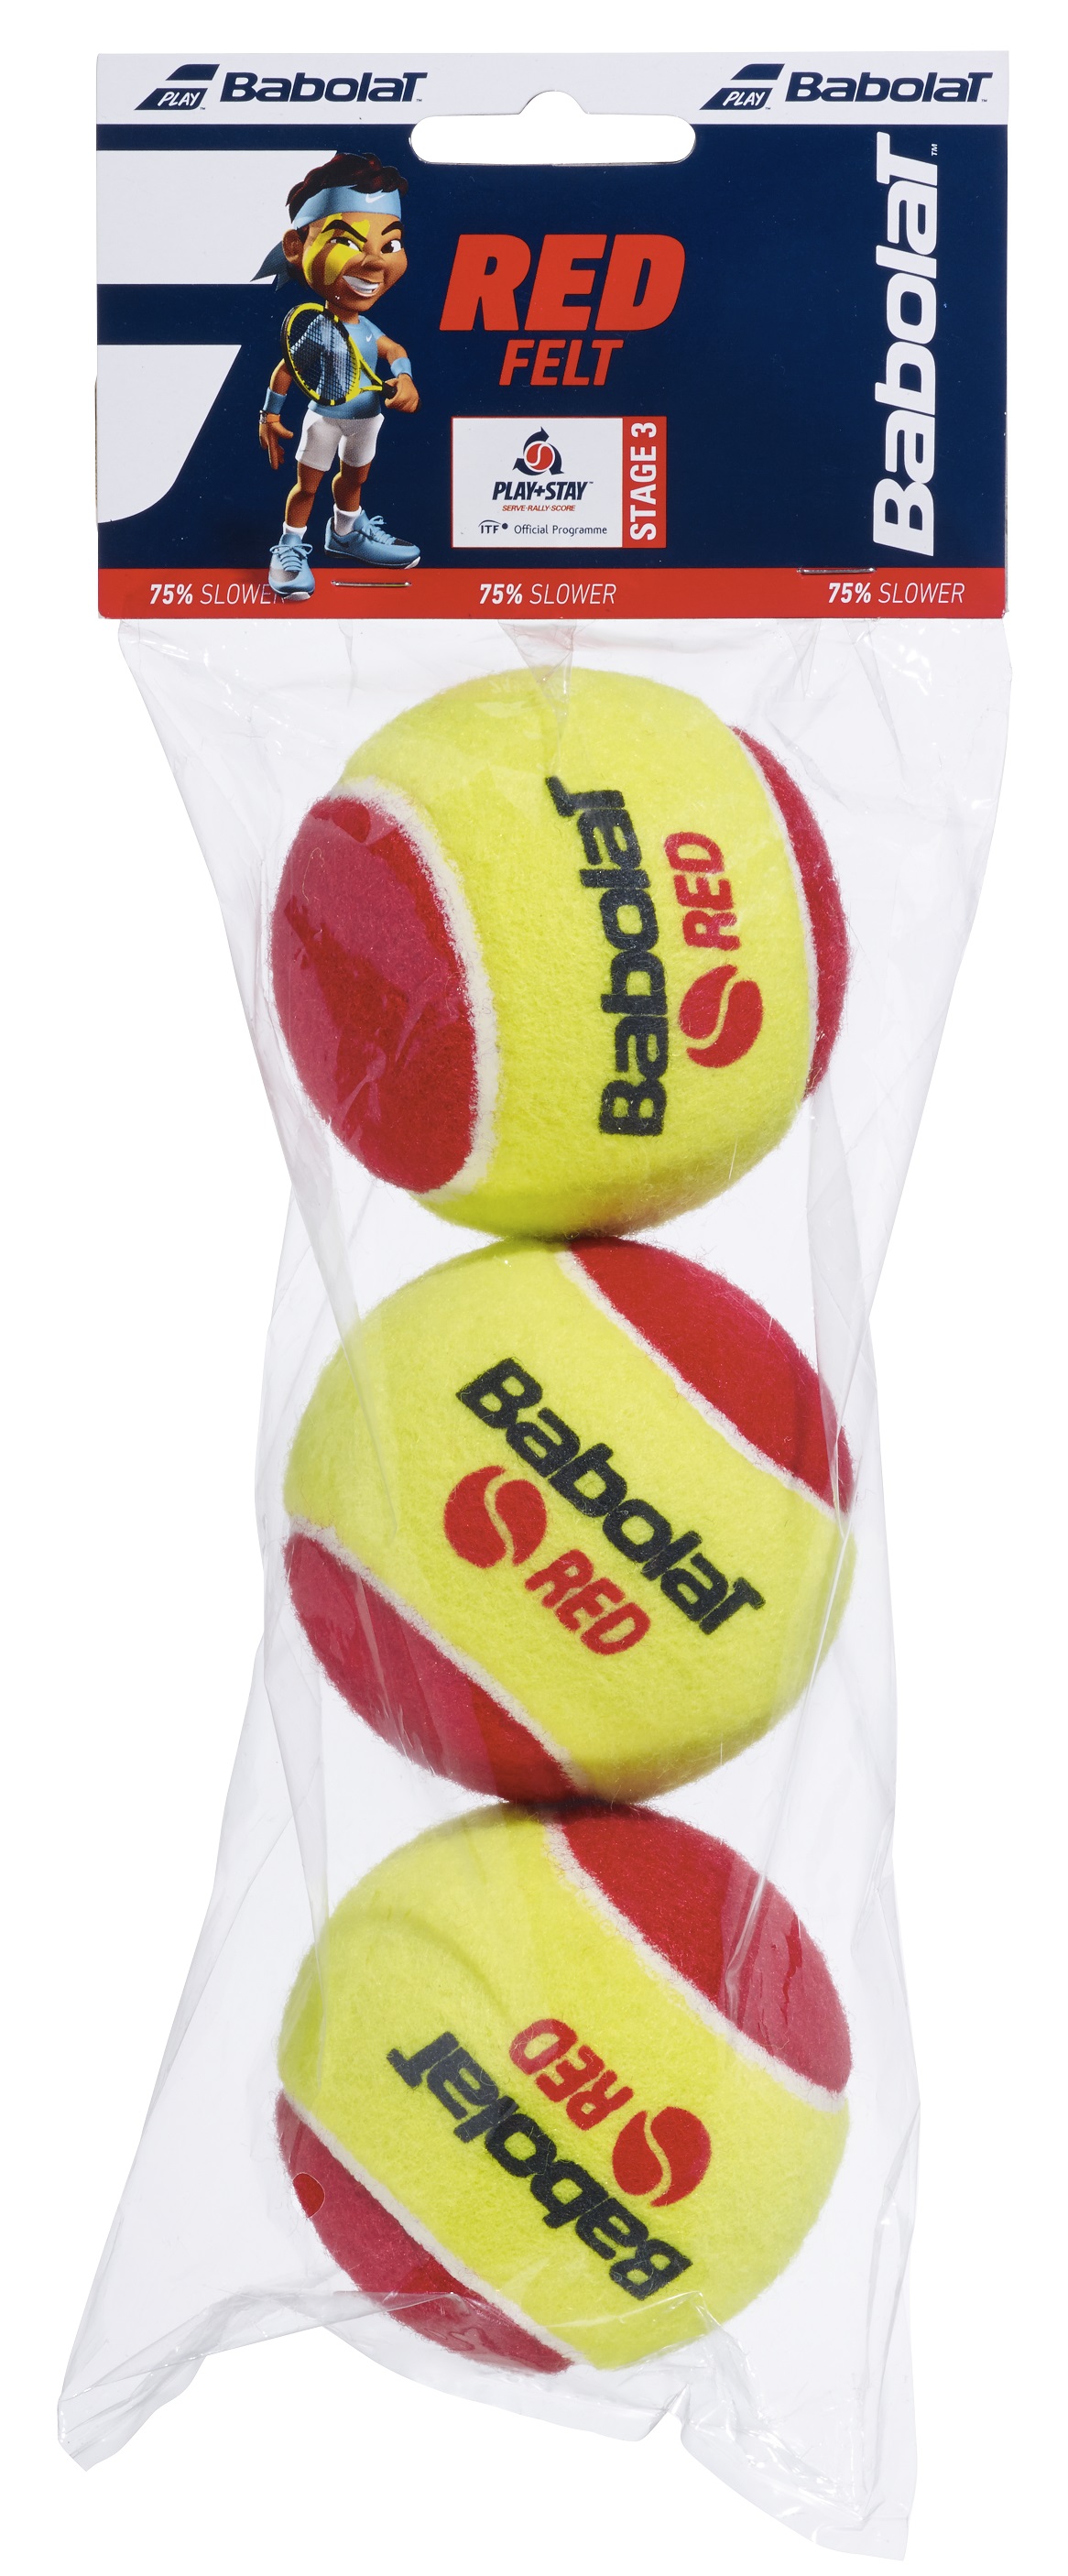 כדור טניס בבולט Red Felt X3 Babolat